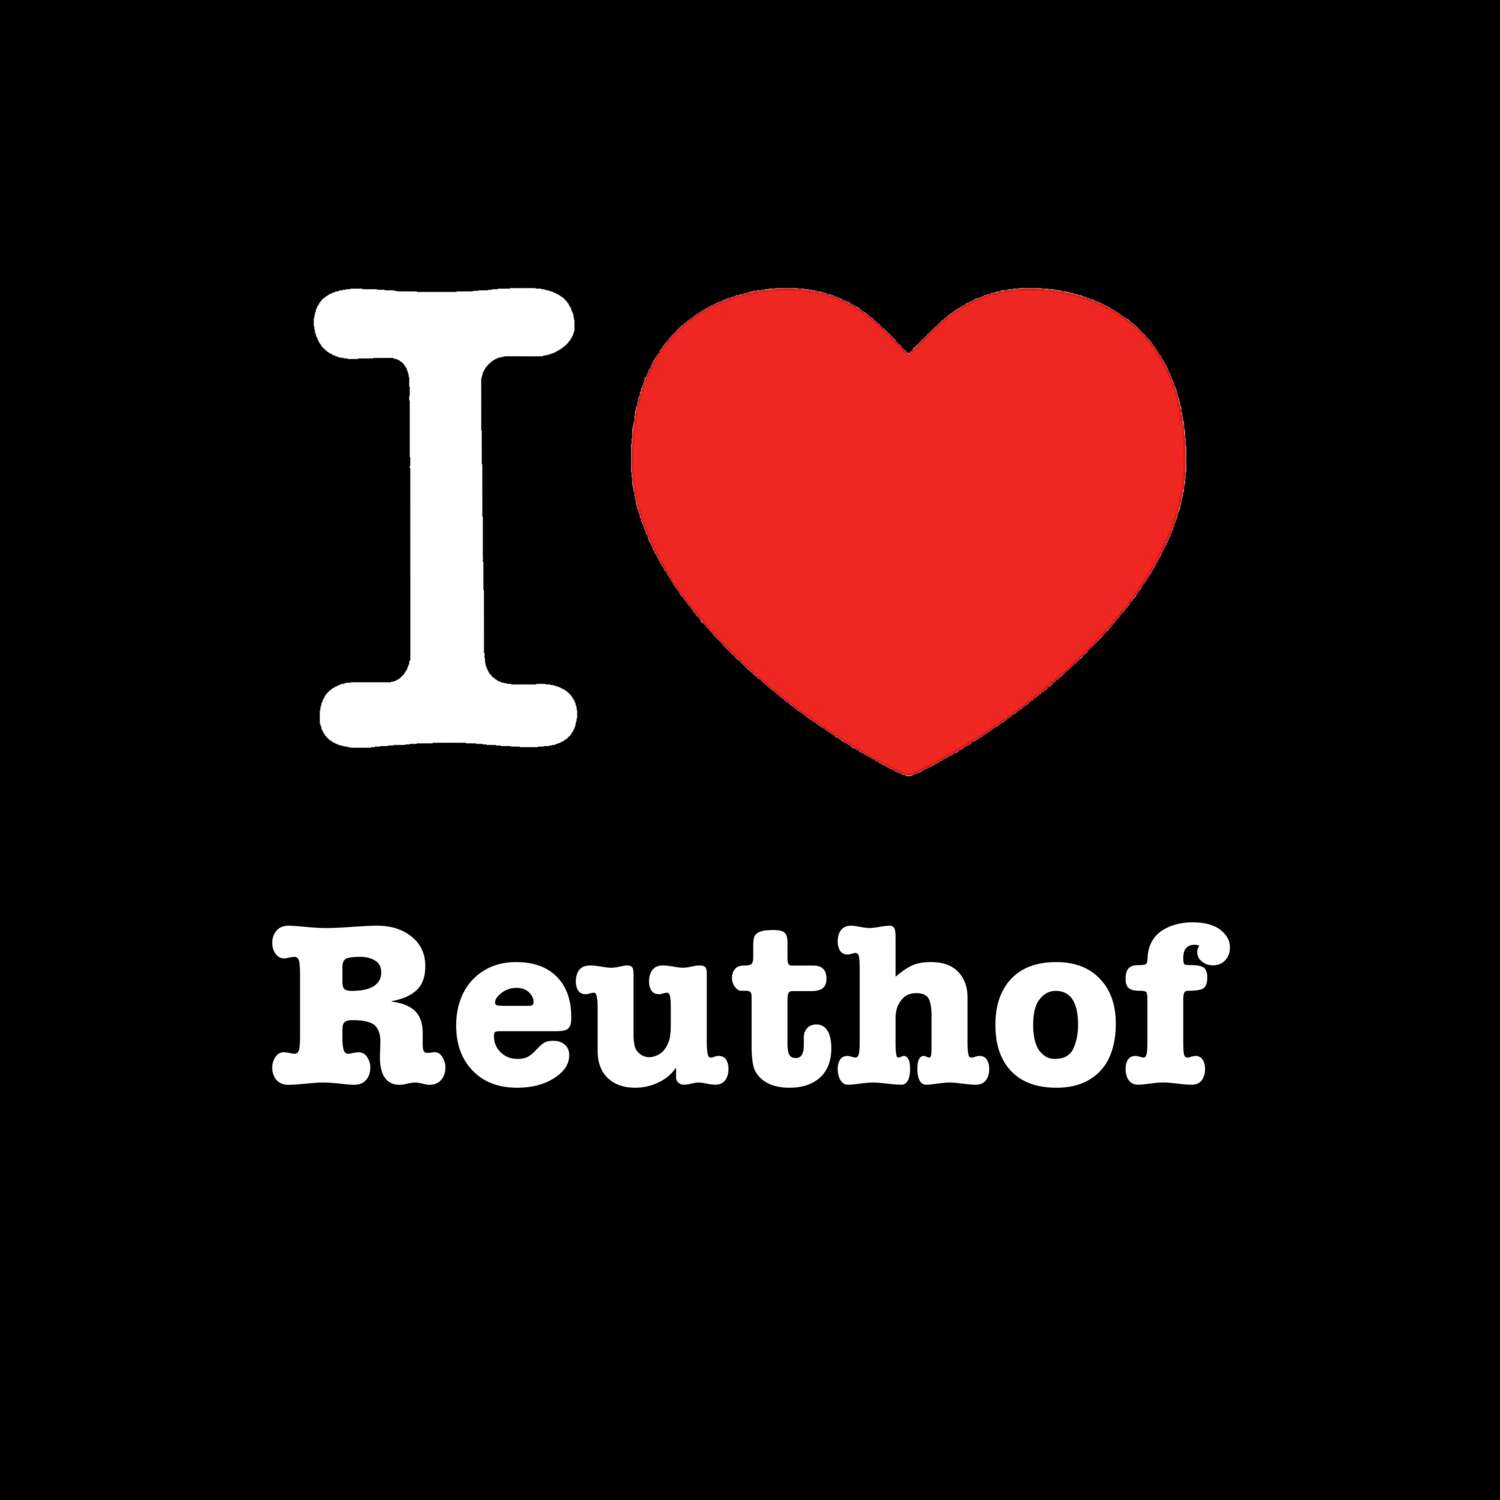 Reuthof T-Shirt »I love«